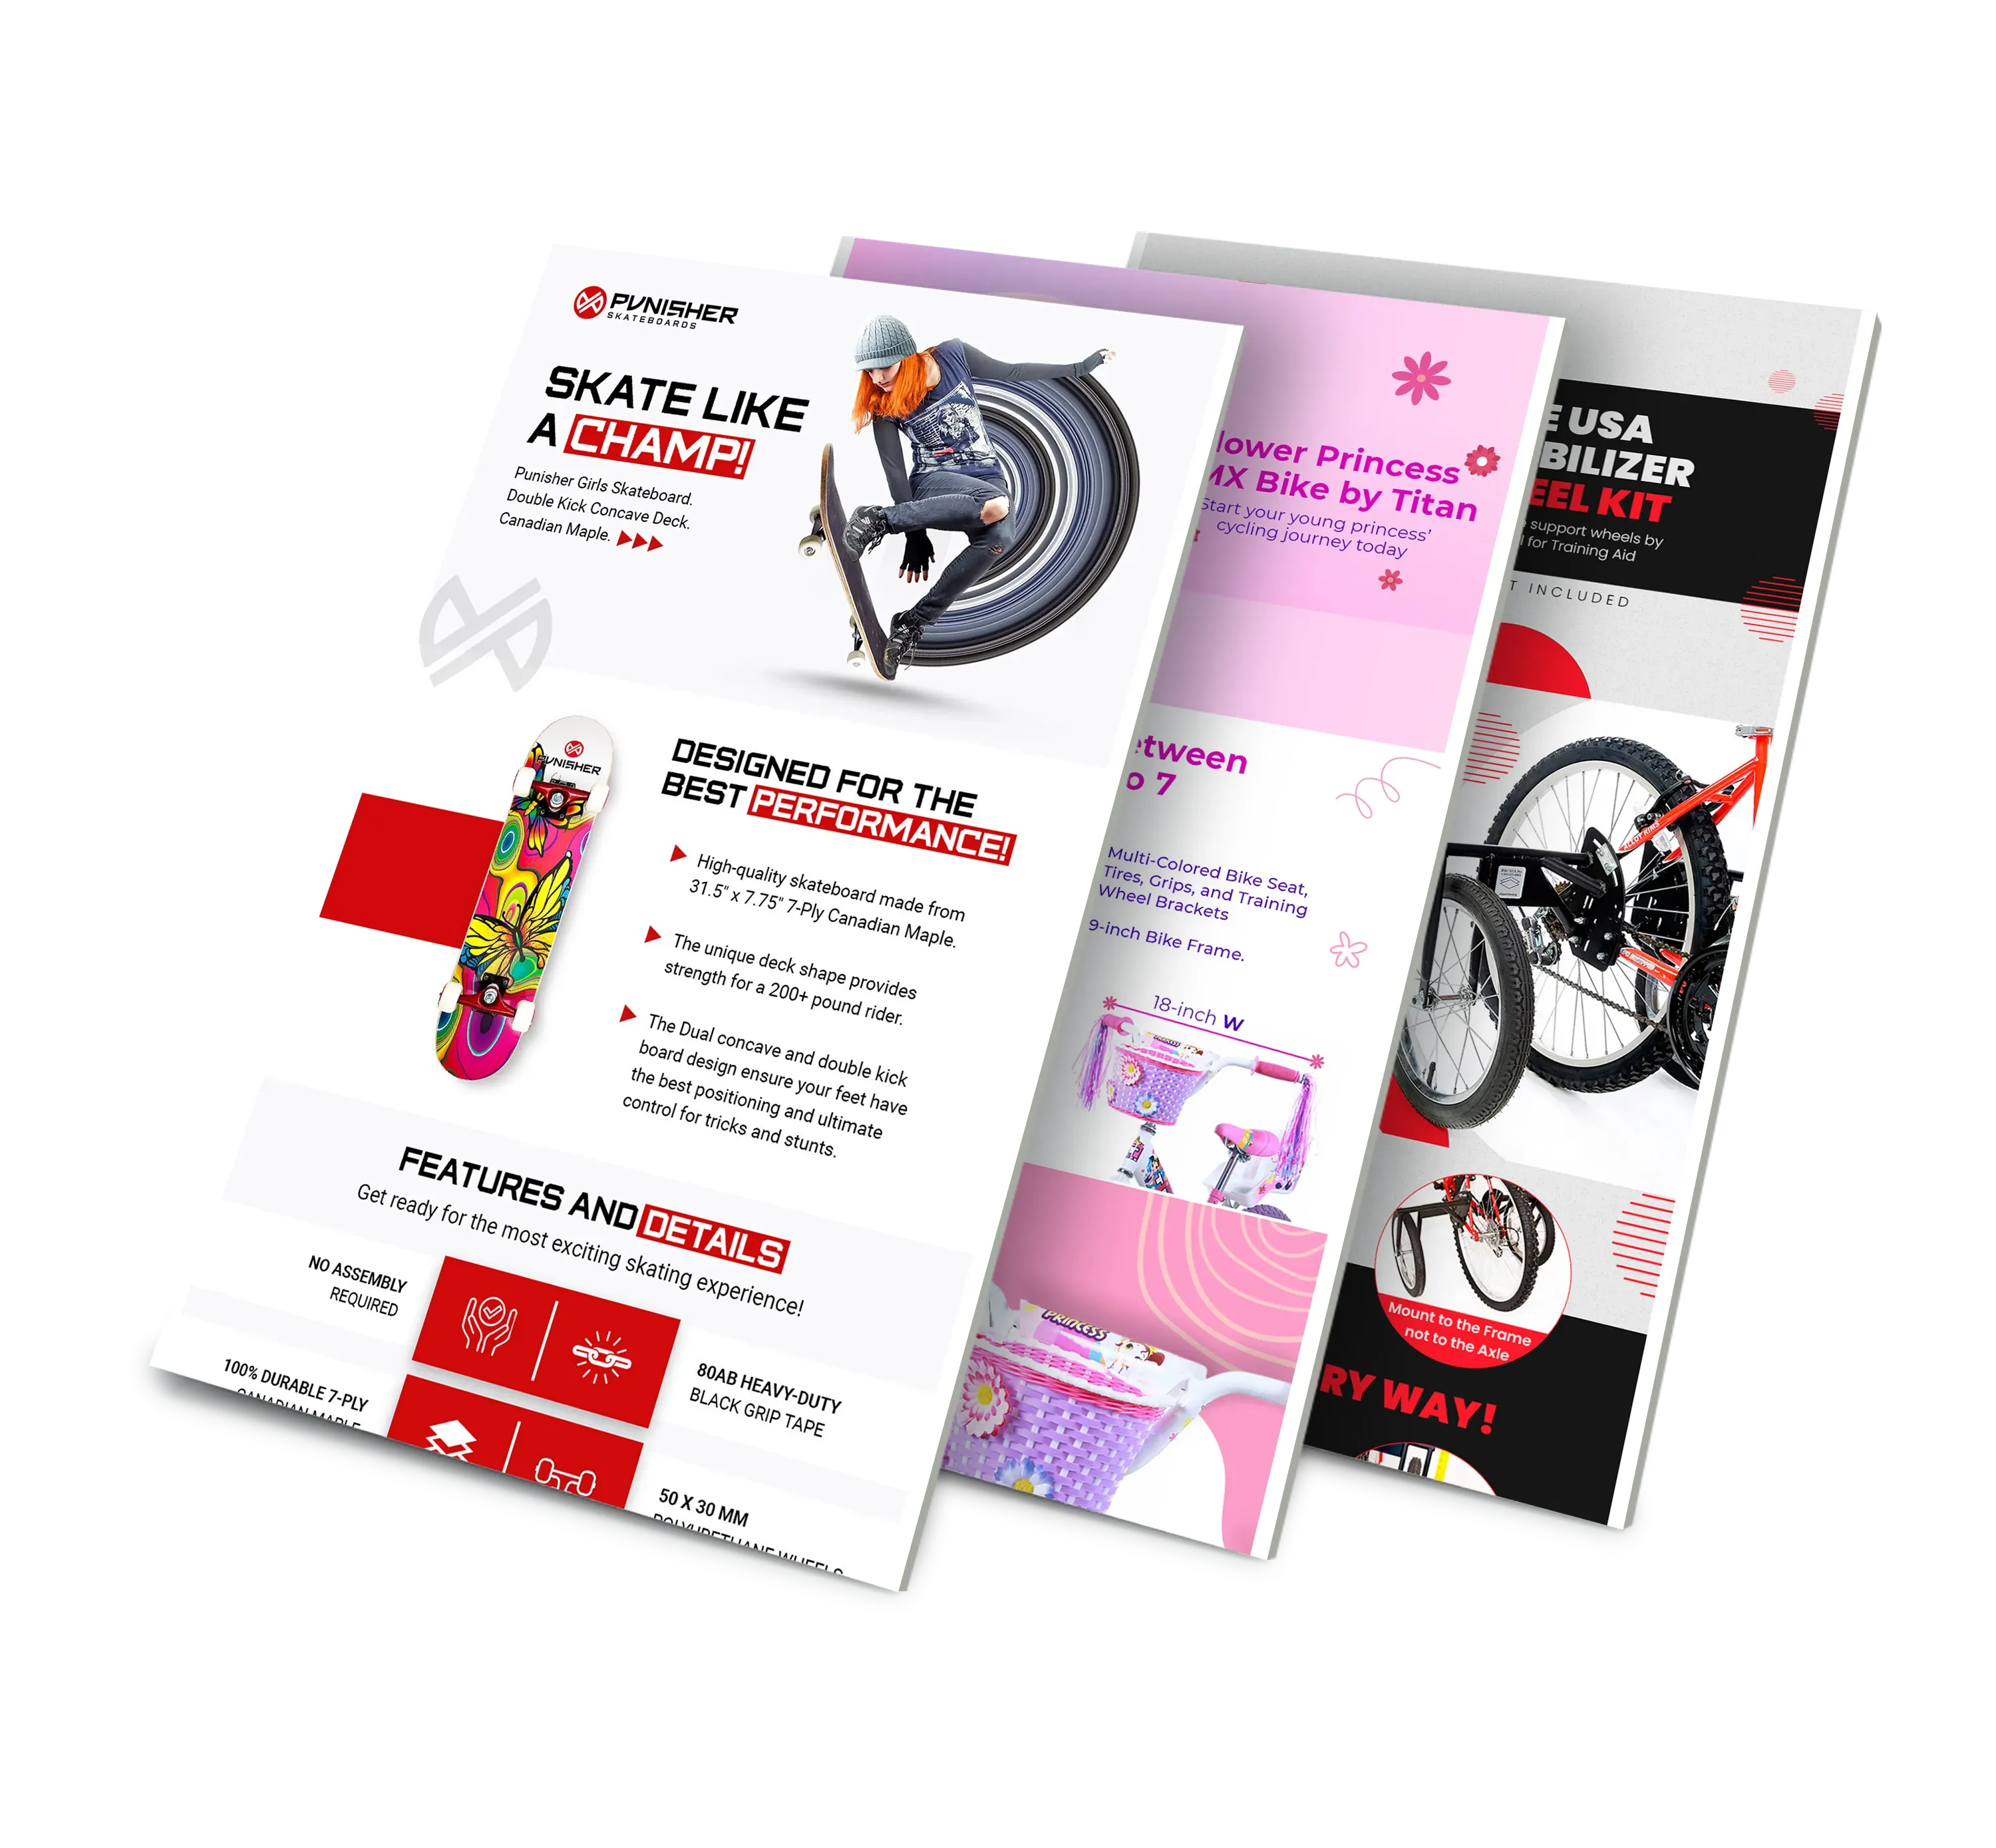 A stack of 3 sales brochures including the Punisher Skateboards brochure